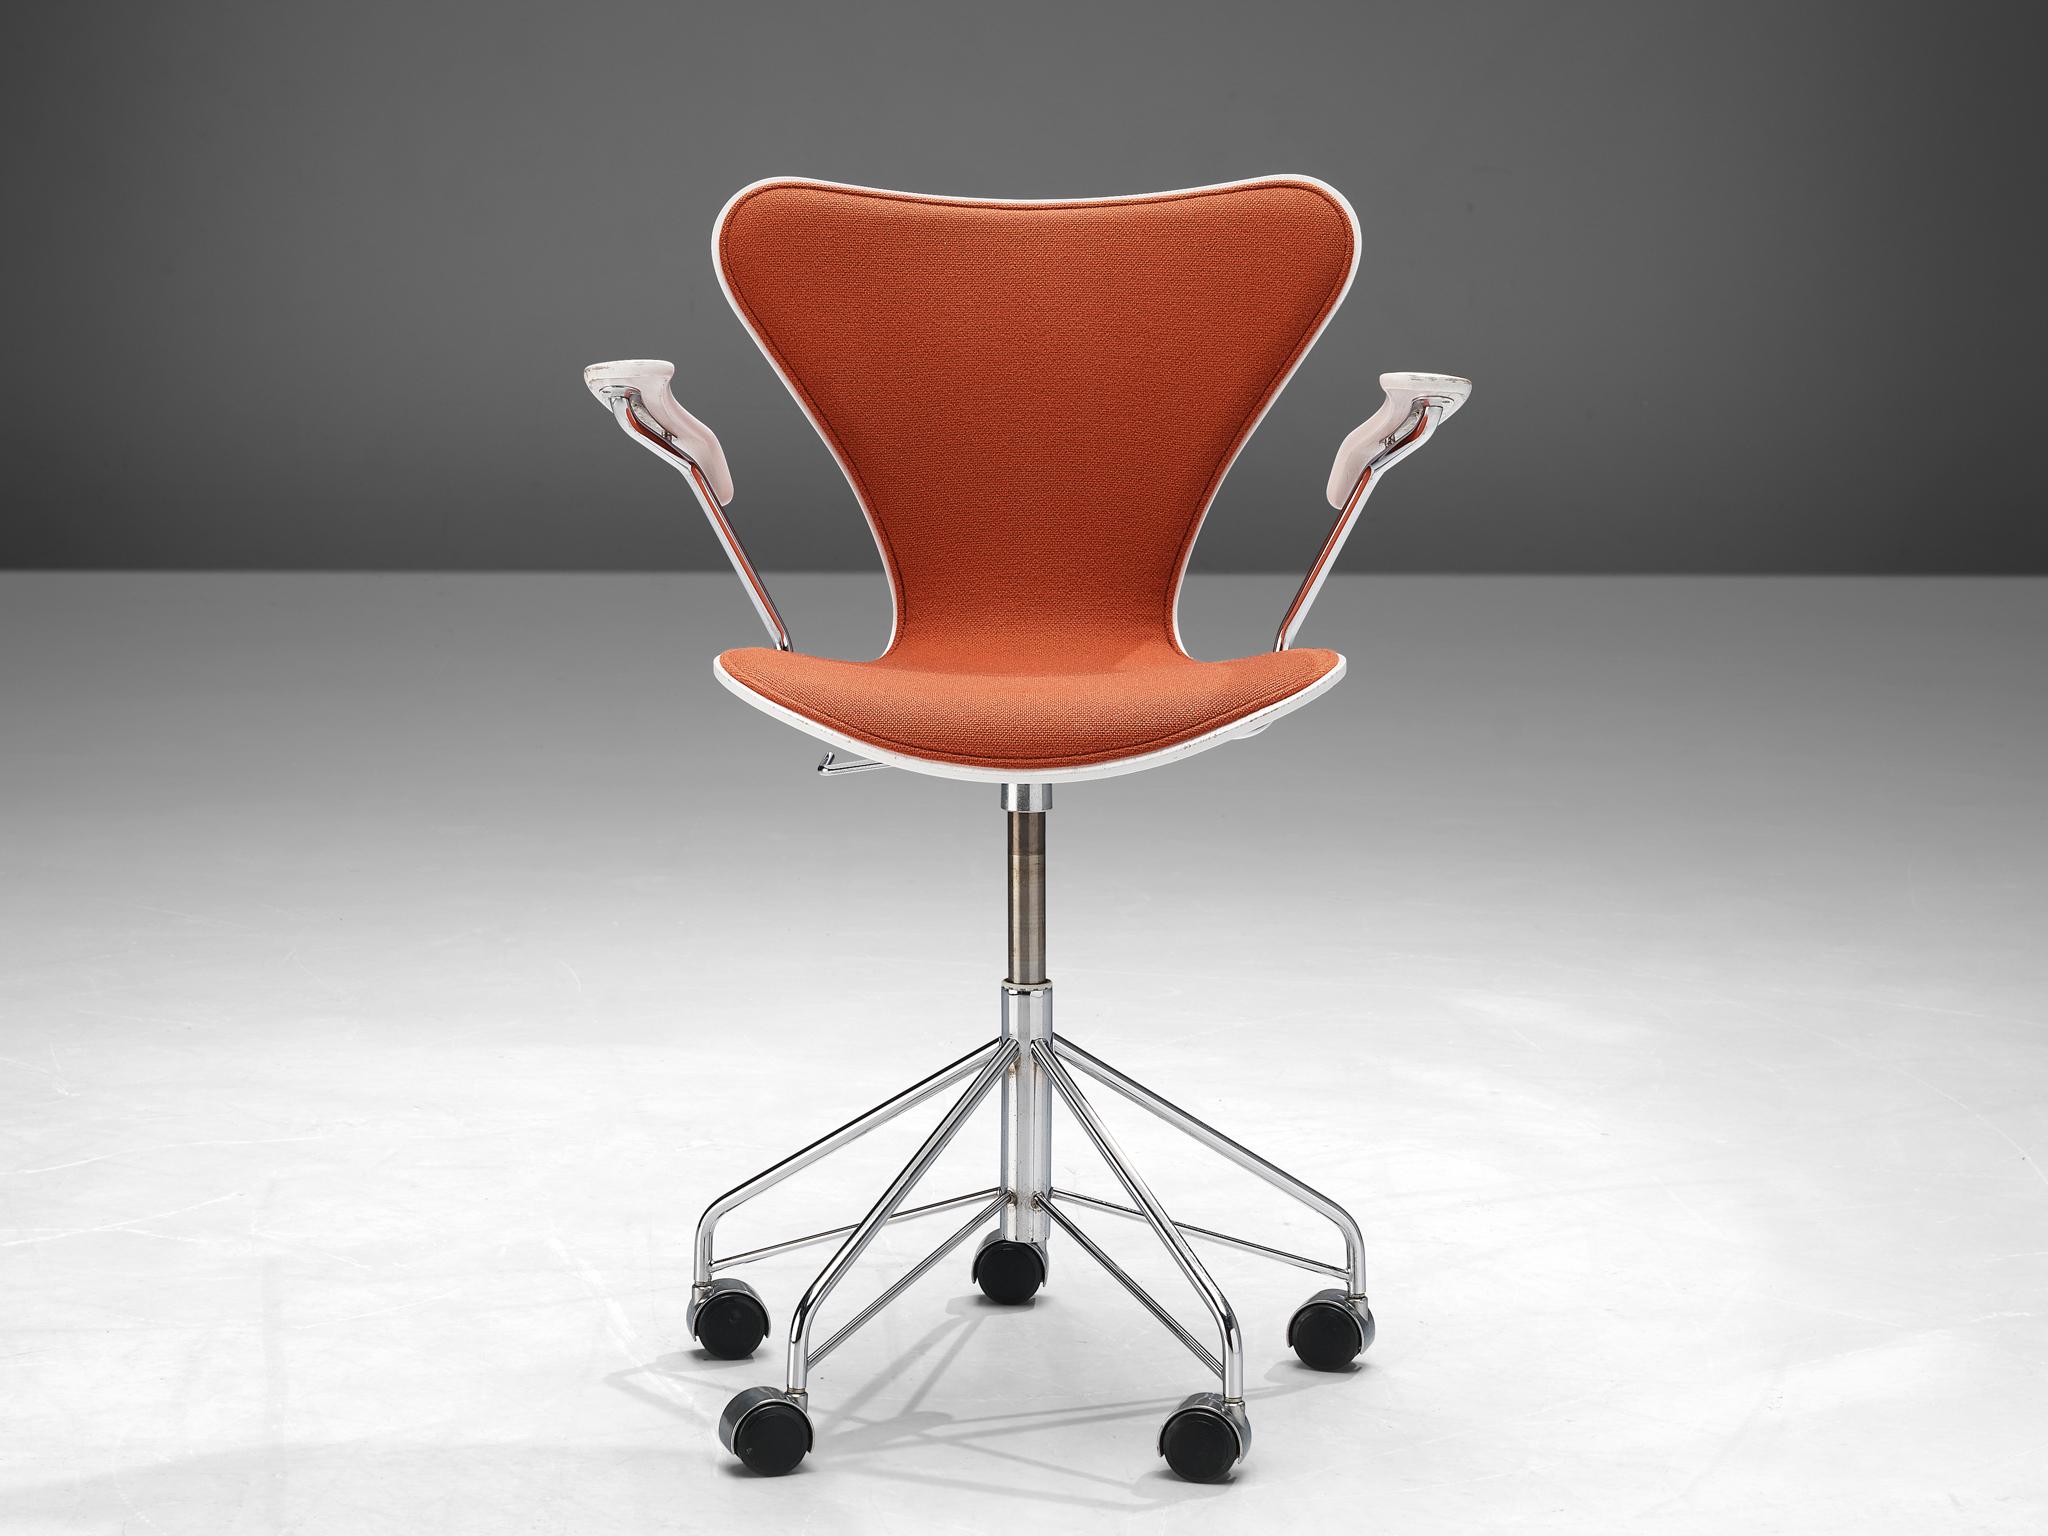 Arne Jacobsen pour Fritz Hansen, chaise de bureau modèle '3217', bois, tissu, métal chromé, plastique, Danemark, conçu en 1955, production ultérieure

Cette chaise de bureau d'Arne Jacobsen fait partie de la série numéro 7 qu'il a conçue en 1955. La